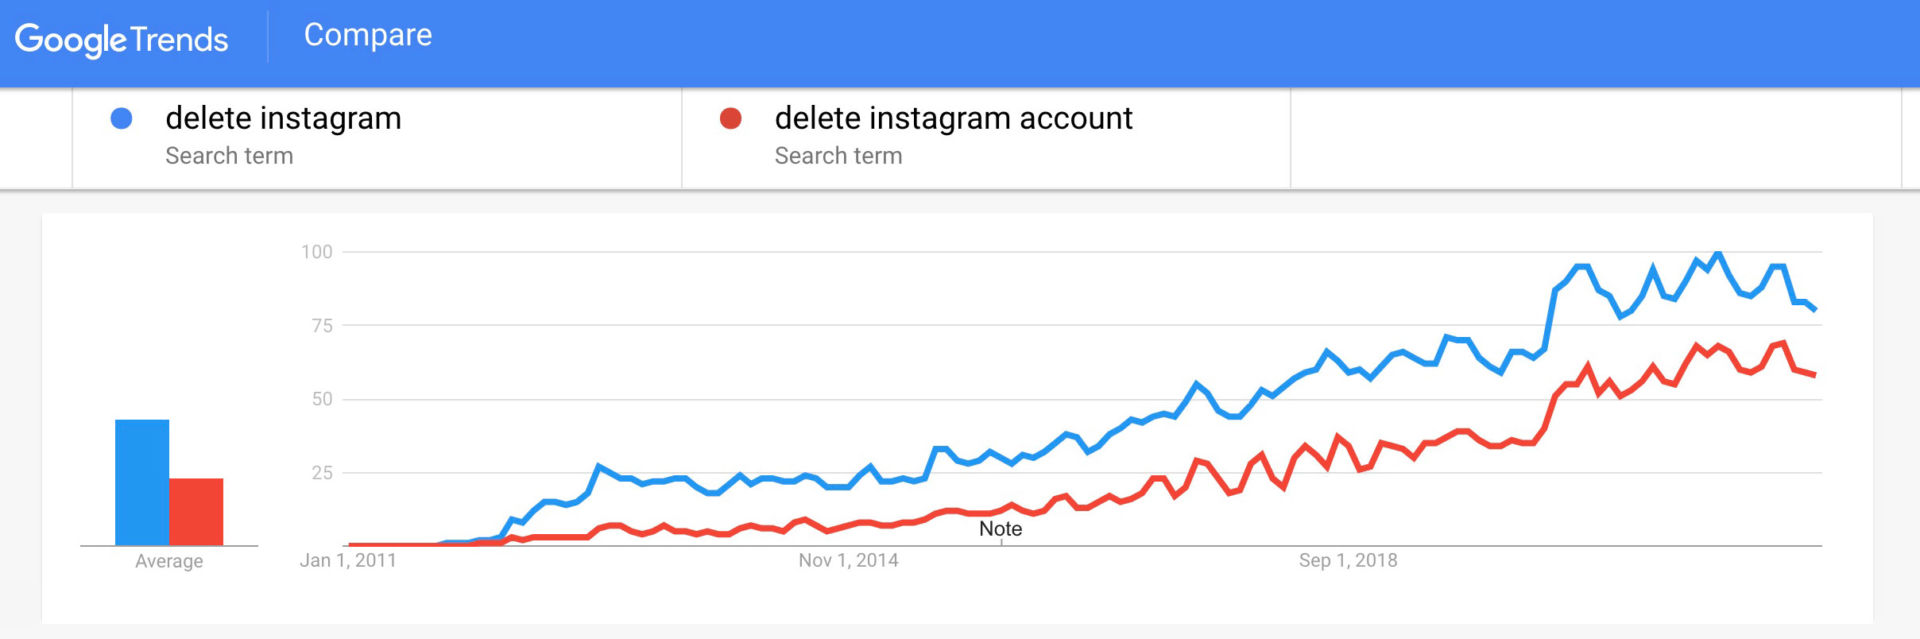 Delete Instagram - Google Trends